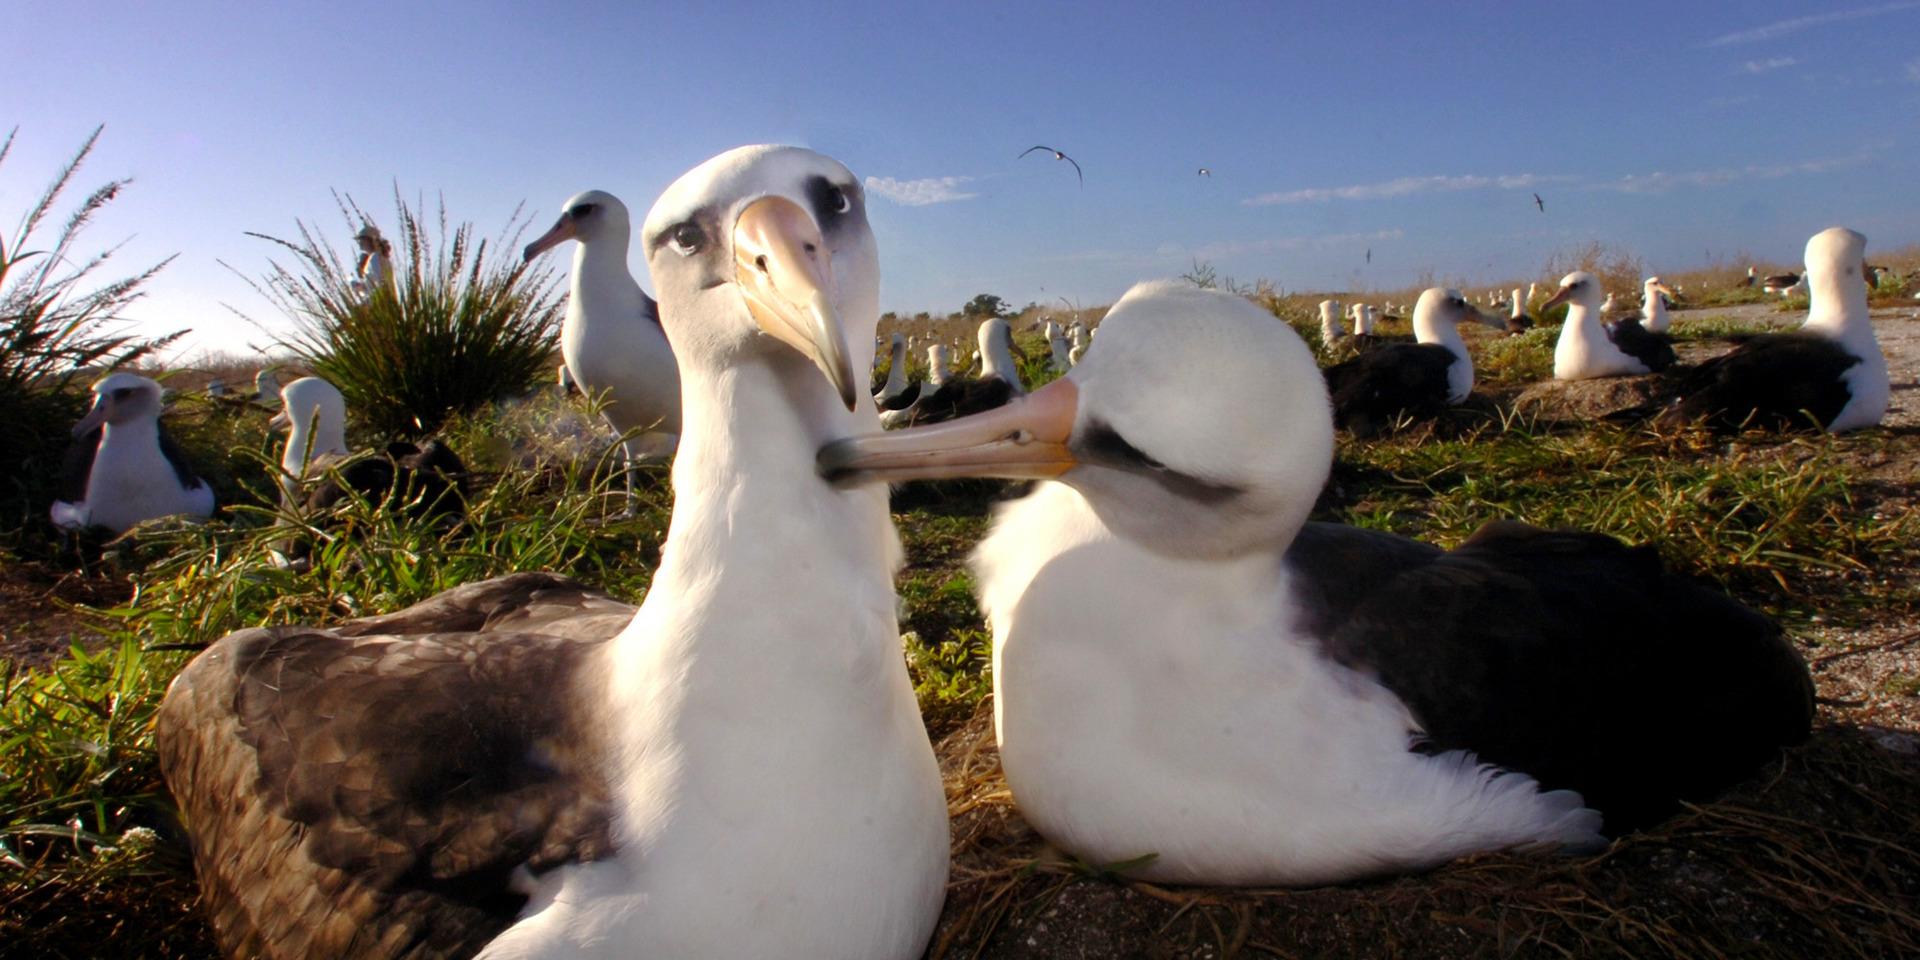 Två albatrosser av arten laysan, som likt den svartbrynade arten också lever monogamt. Arkivbild.